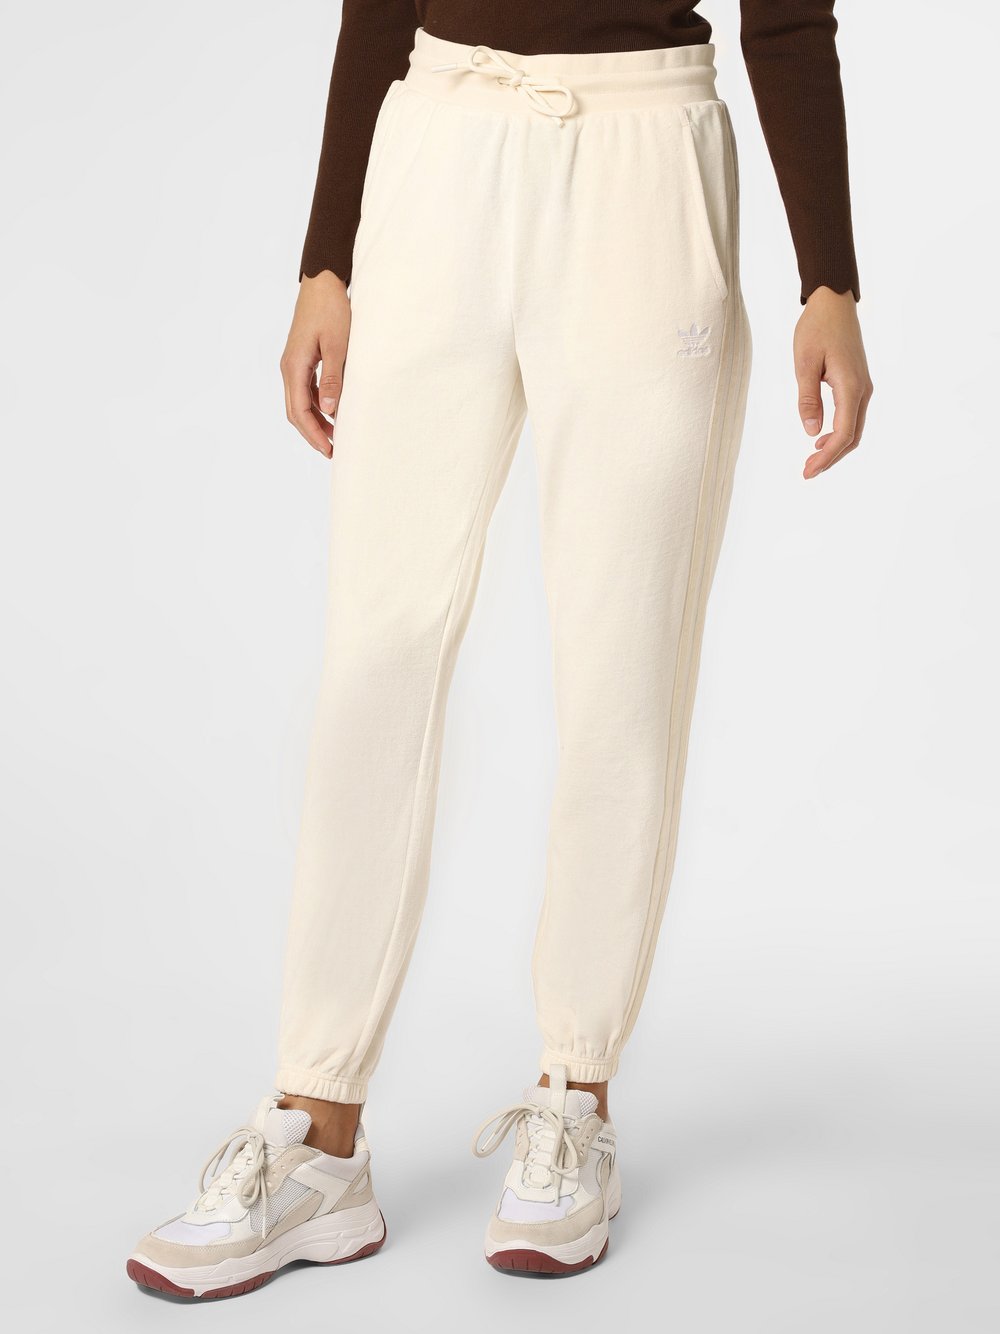 Adidas Originals - Damskie spodnie dresowe, biały